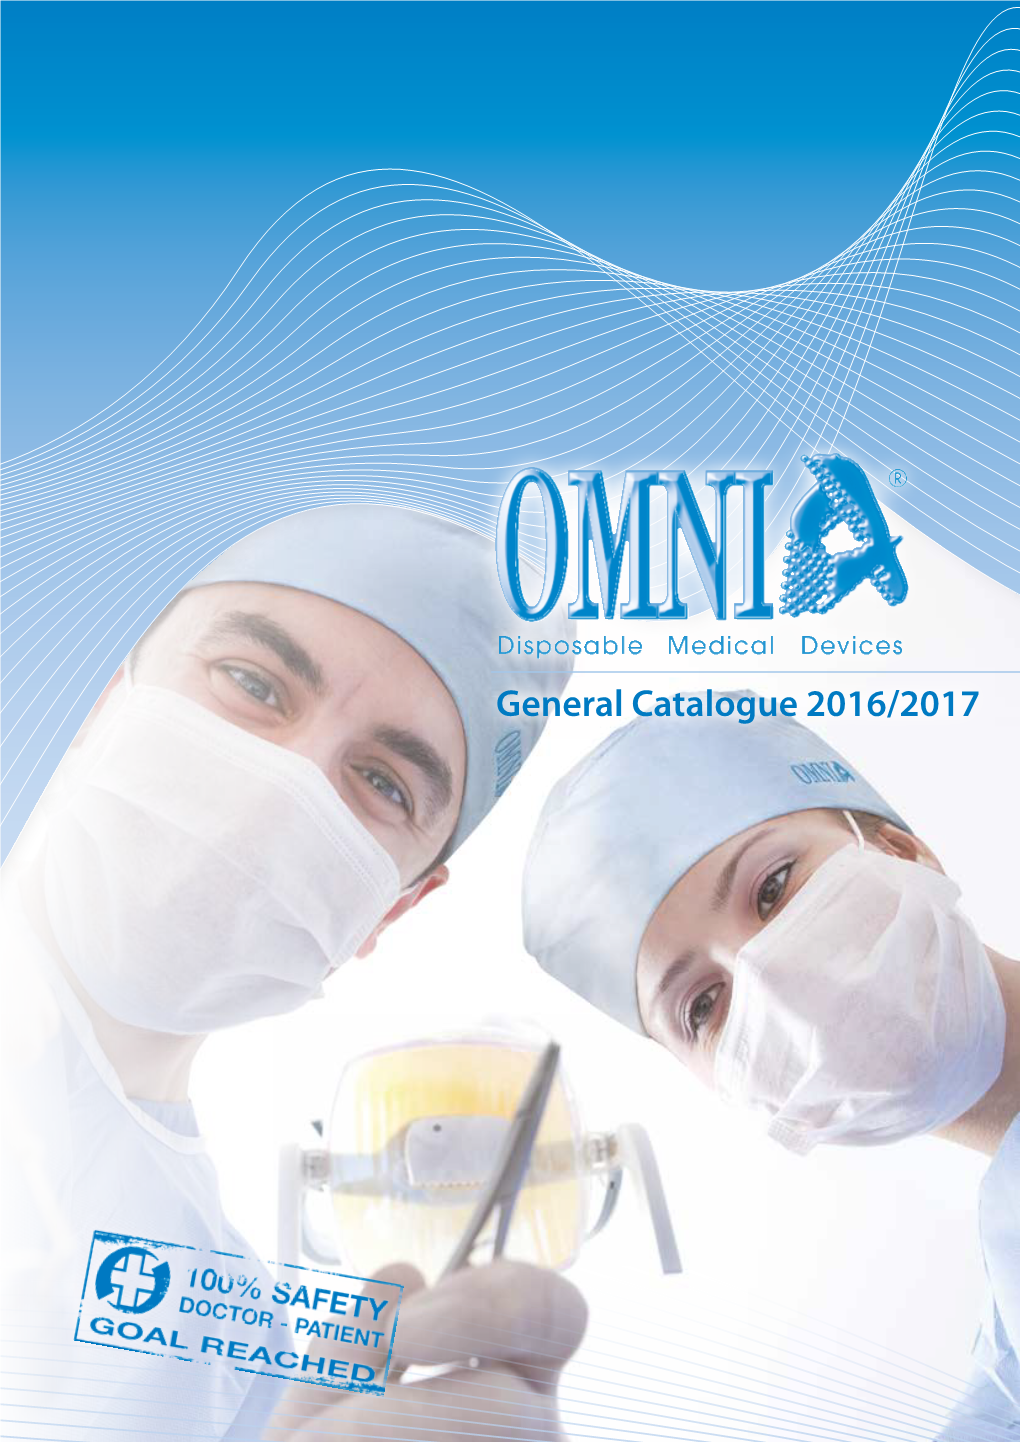 General Catalogue 2016/2017